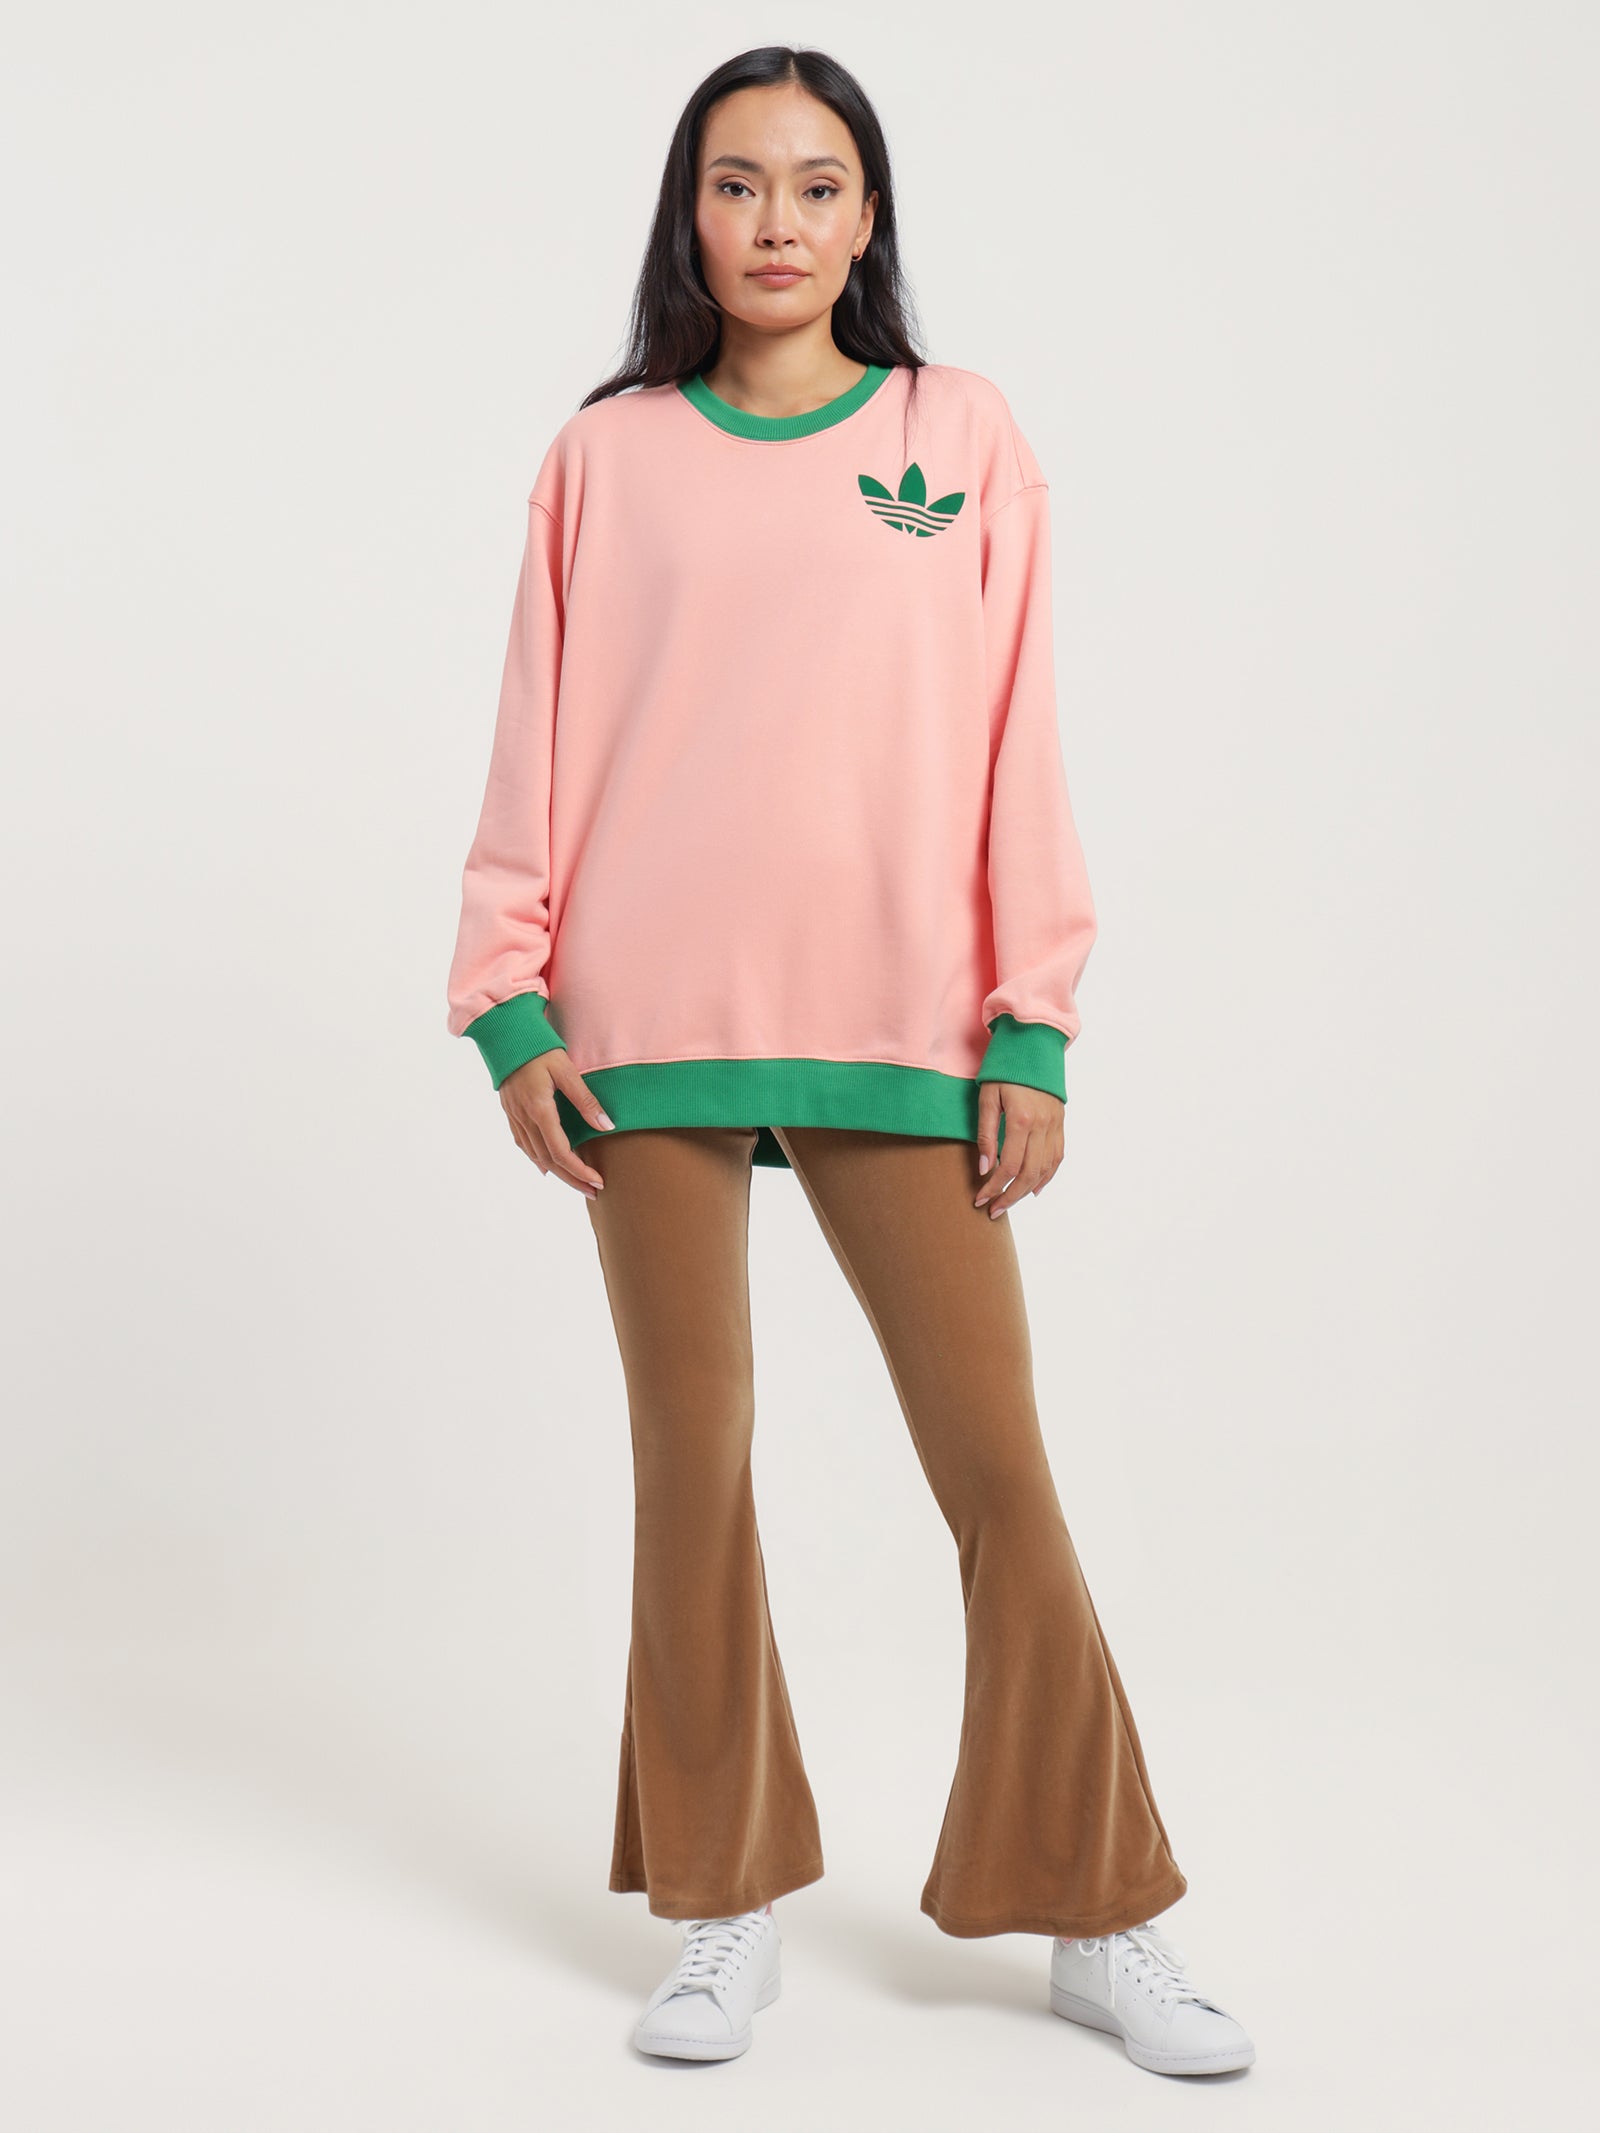 ADICOLOR 70s Heritage Now Sweatshirt in Super Pop